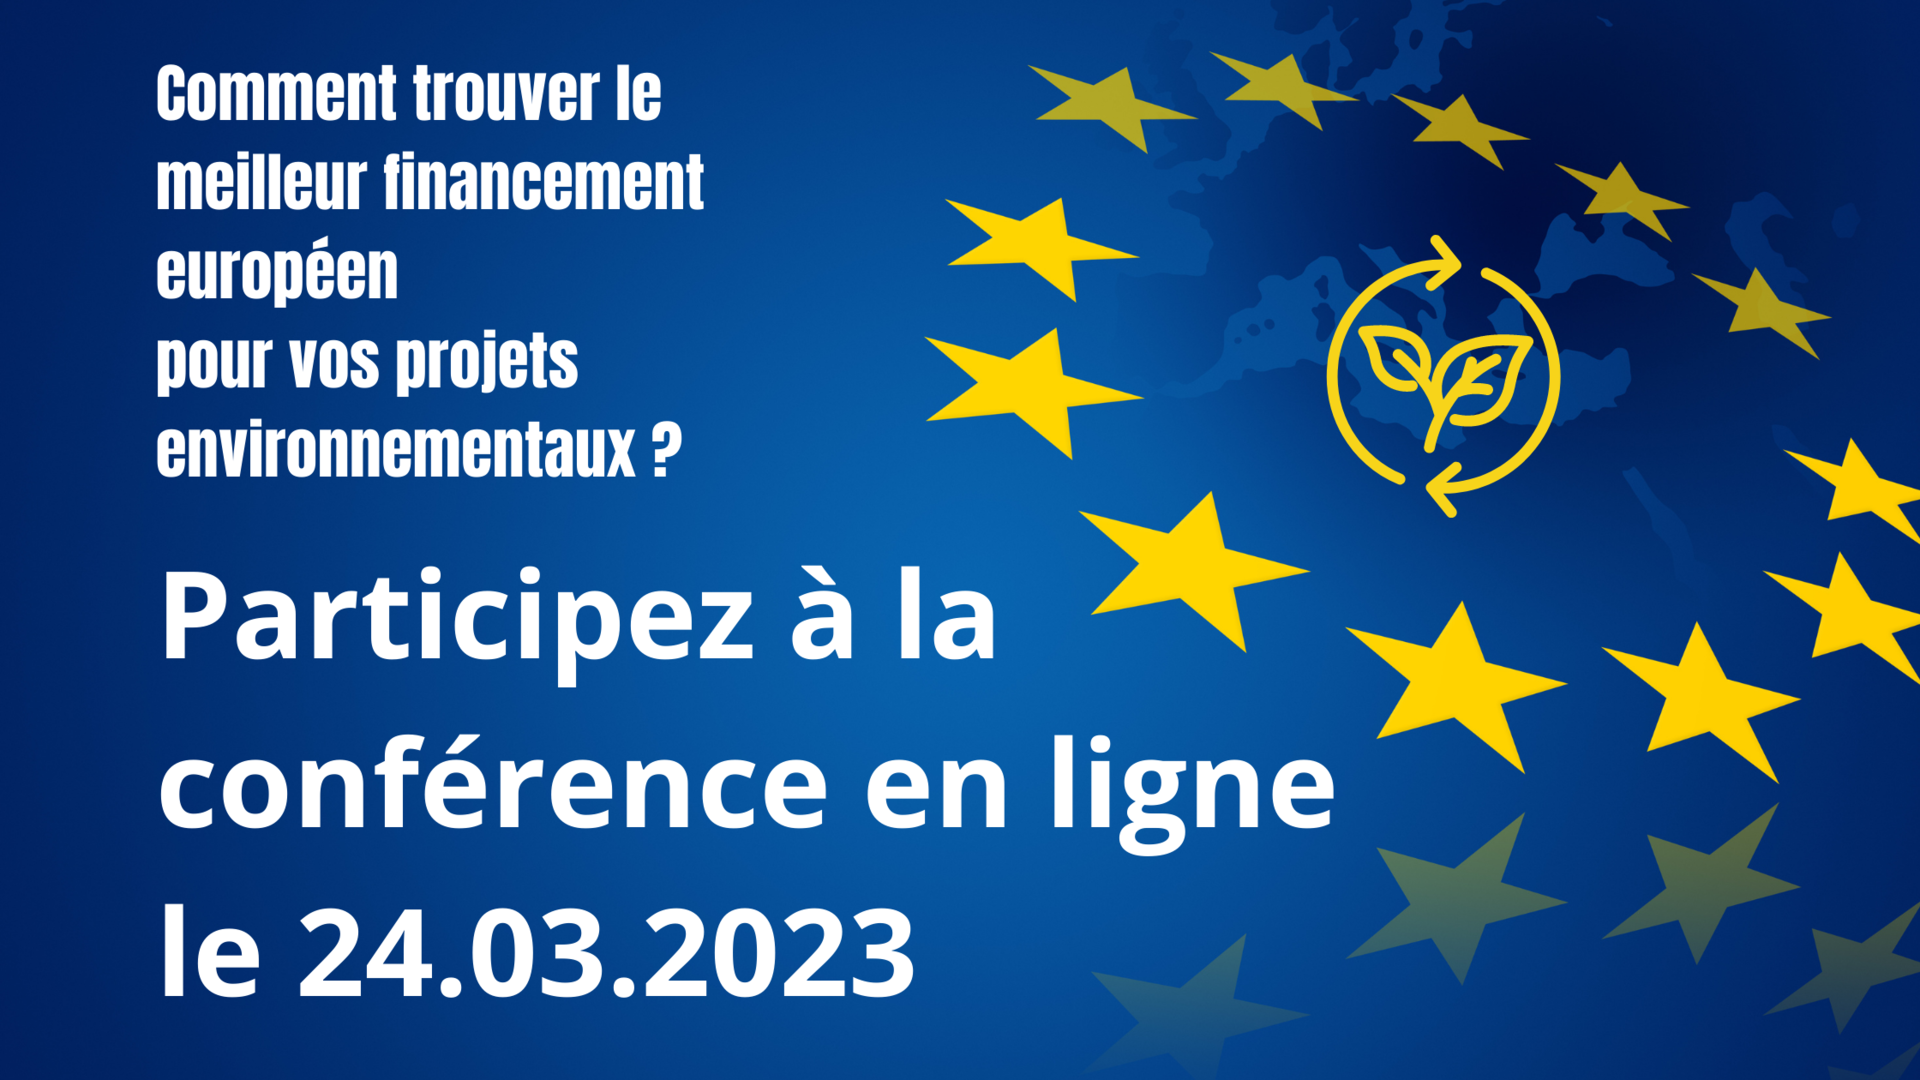 Participez à une conférence en ligne et découvrez comment accéder aux financements européens pour vos projets envrionnementaux